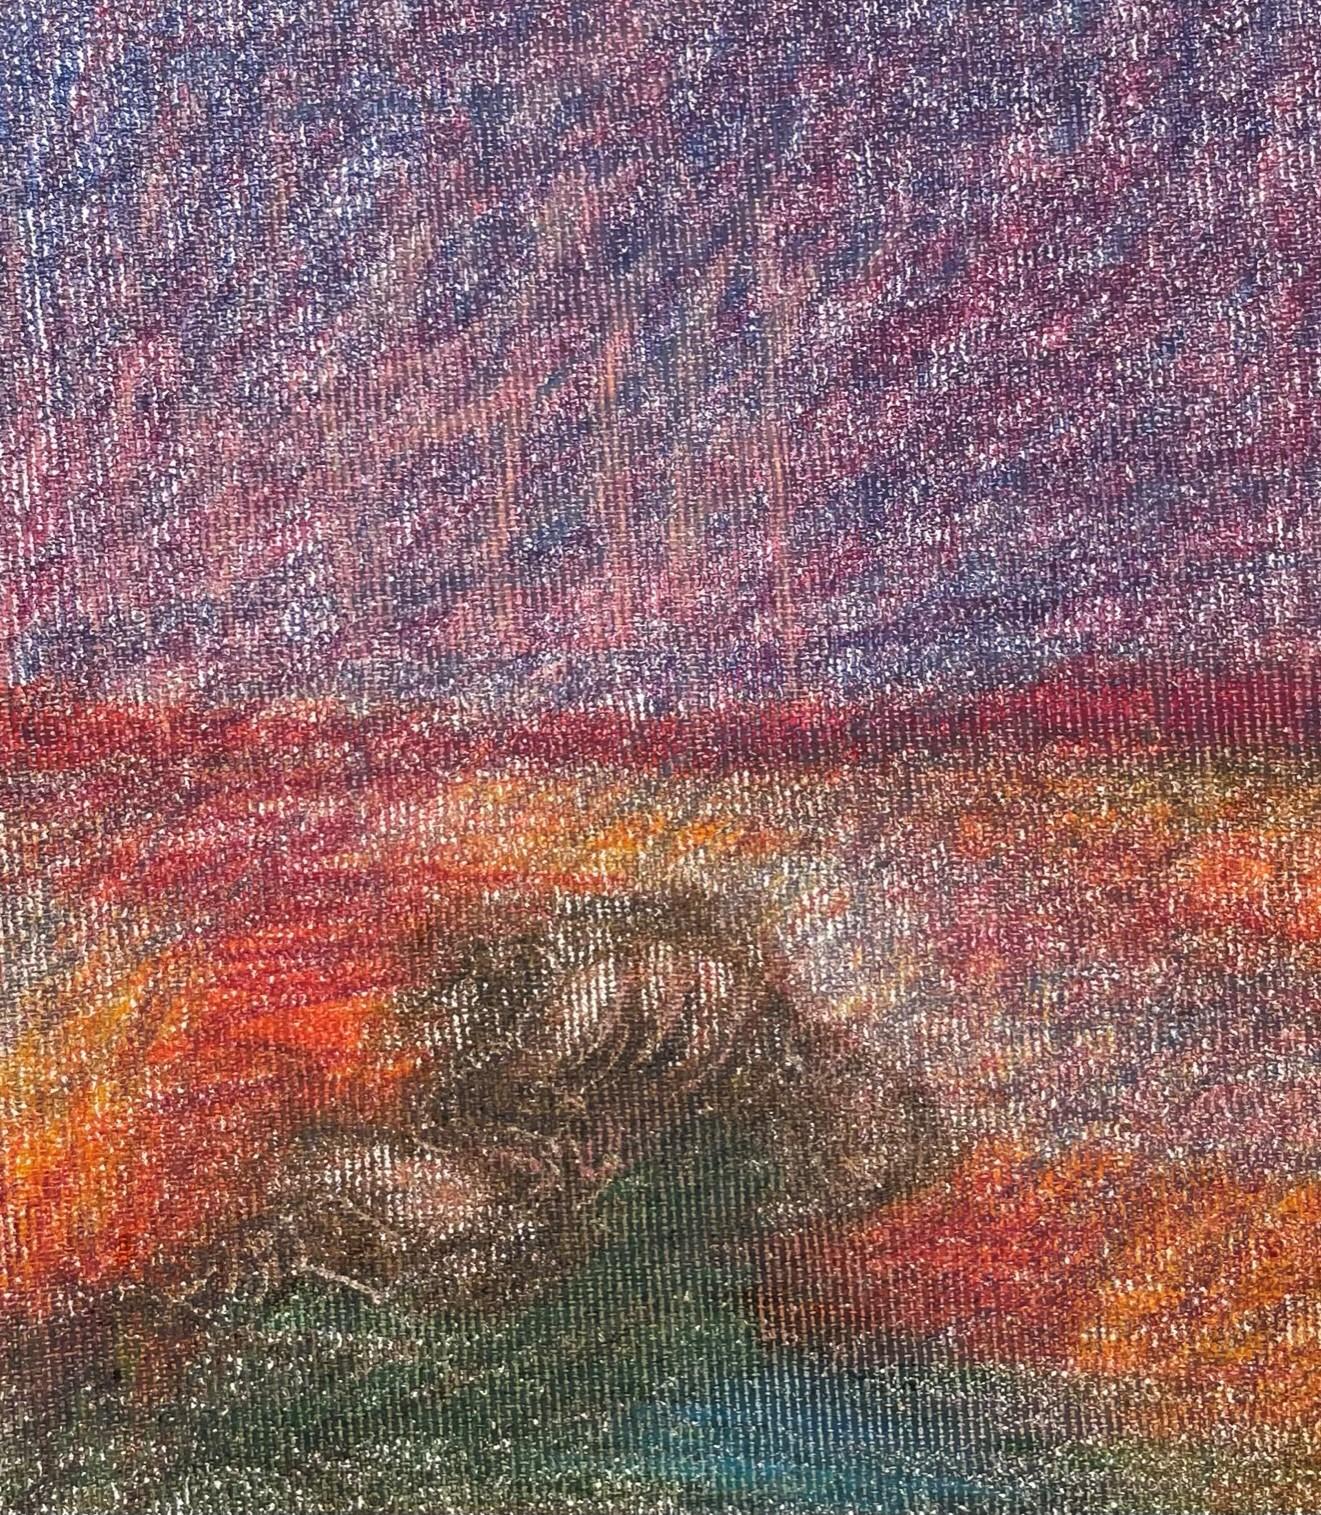 Body in the Field #1 - Rot, Landschaft, Bleistift, Zeichnung mit Farbstift (Schwarz), Landscape Art, von Zsolt Berszán